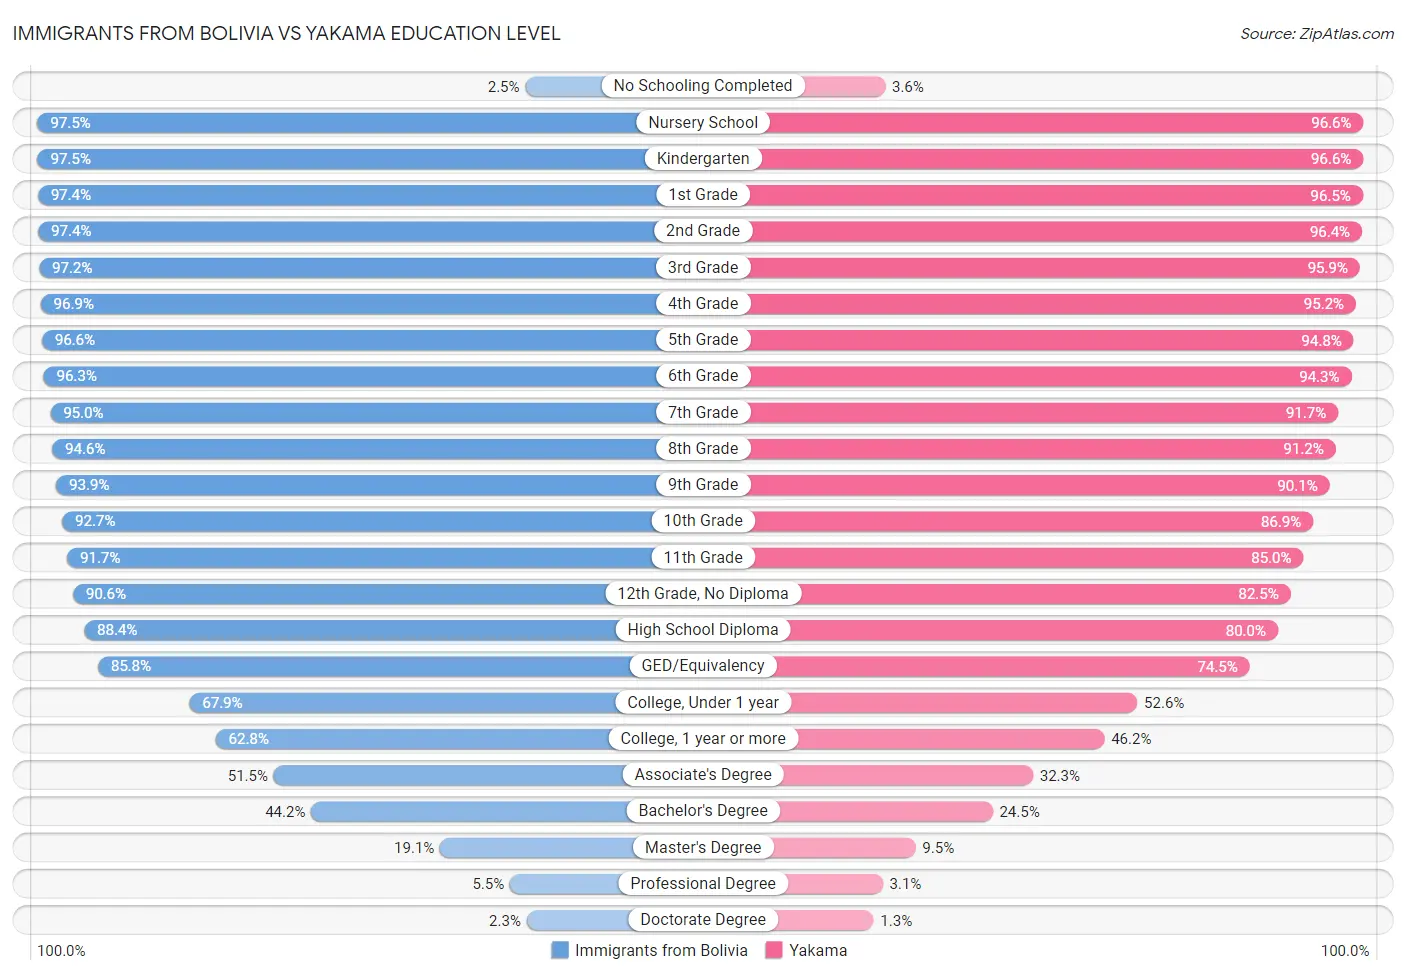 Immigrants from Bolivia vs Yakama Education Level